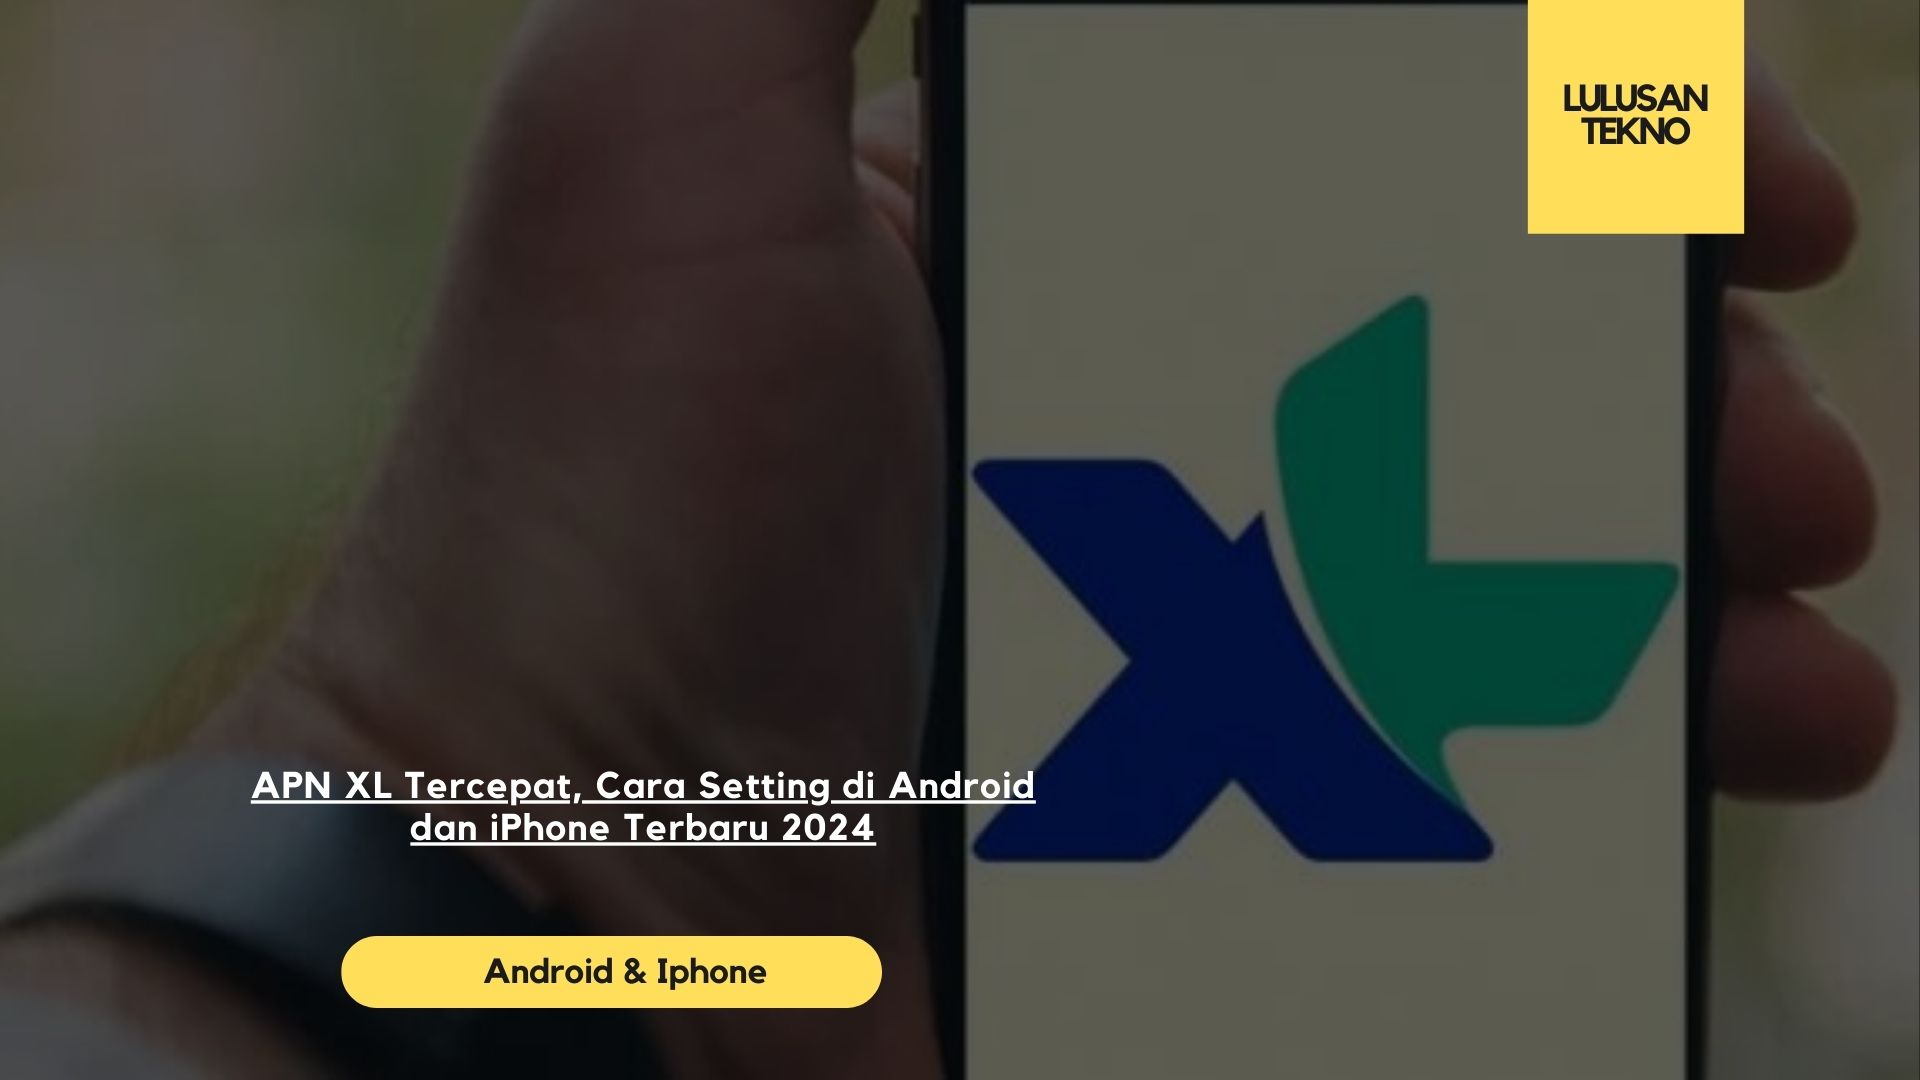 APN XL Tercepat, Cara Setting di Android dan iPhone Terbaru 2024